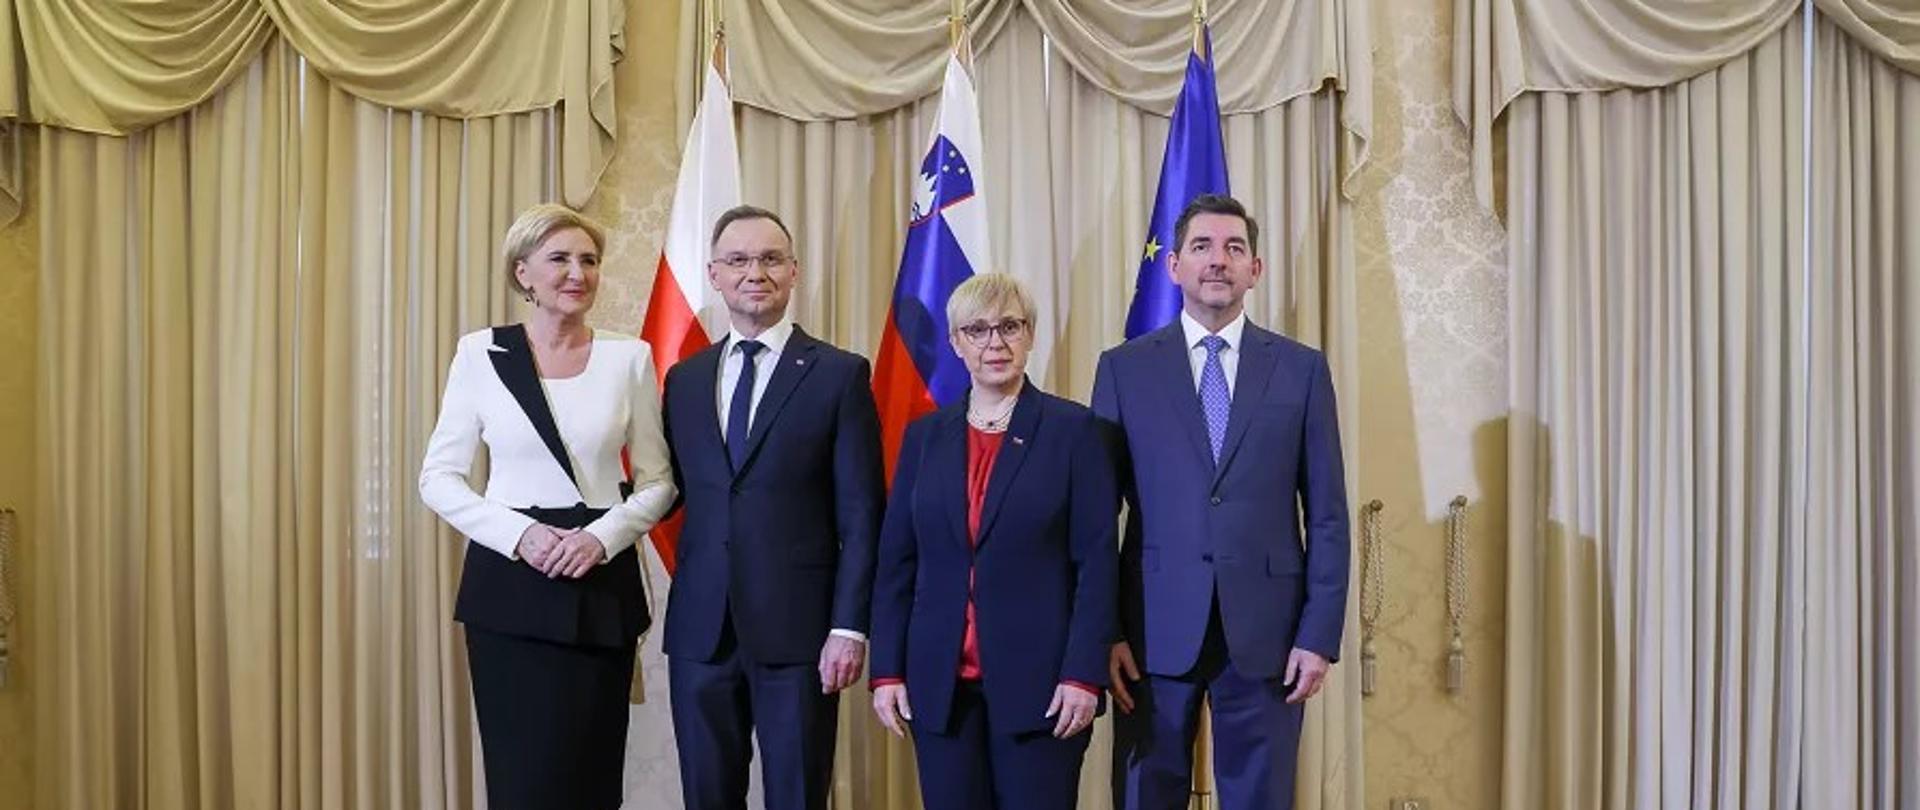 
Uradni obisk predsednika Republike Poljske Andrzeja Dude v Sloveniji